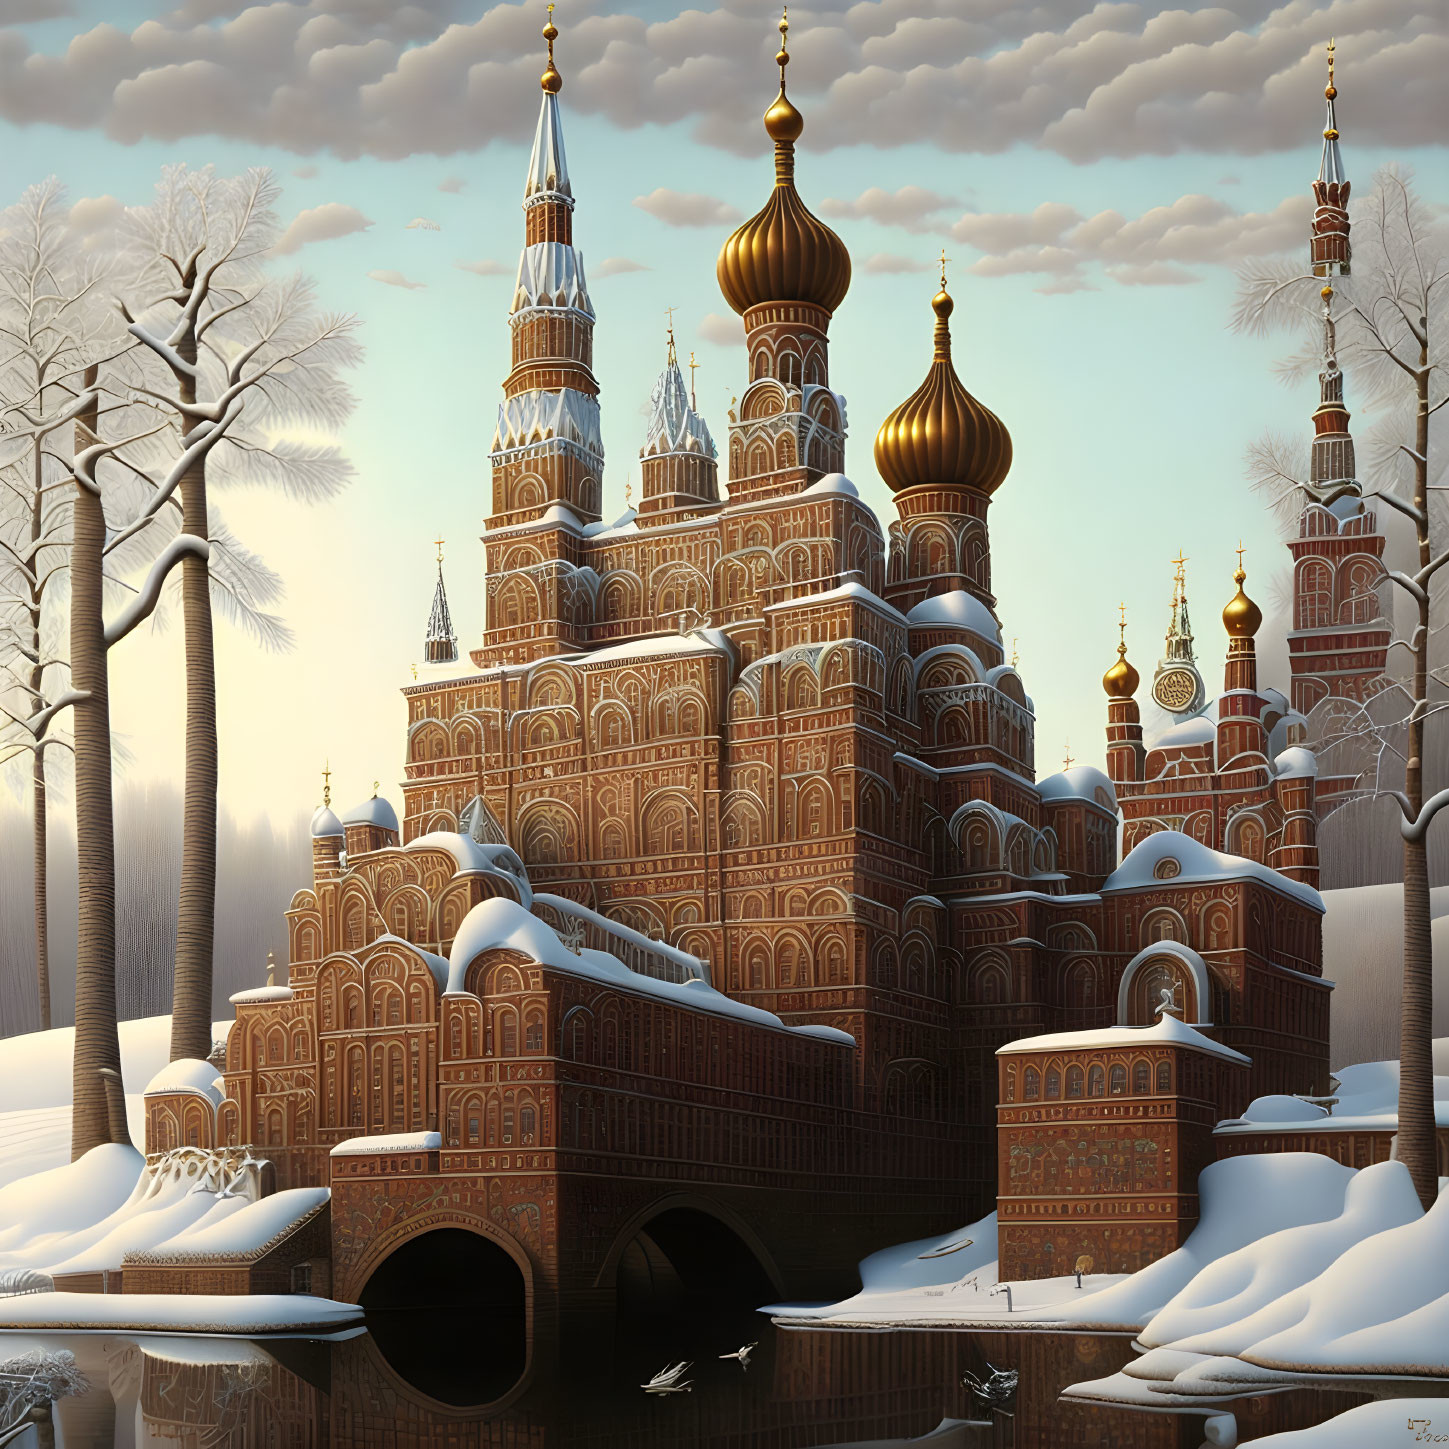 Moscow by Jacek Yerka